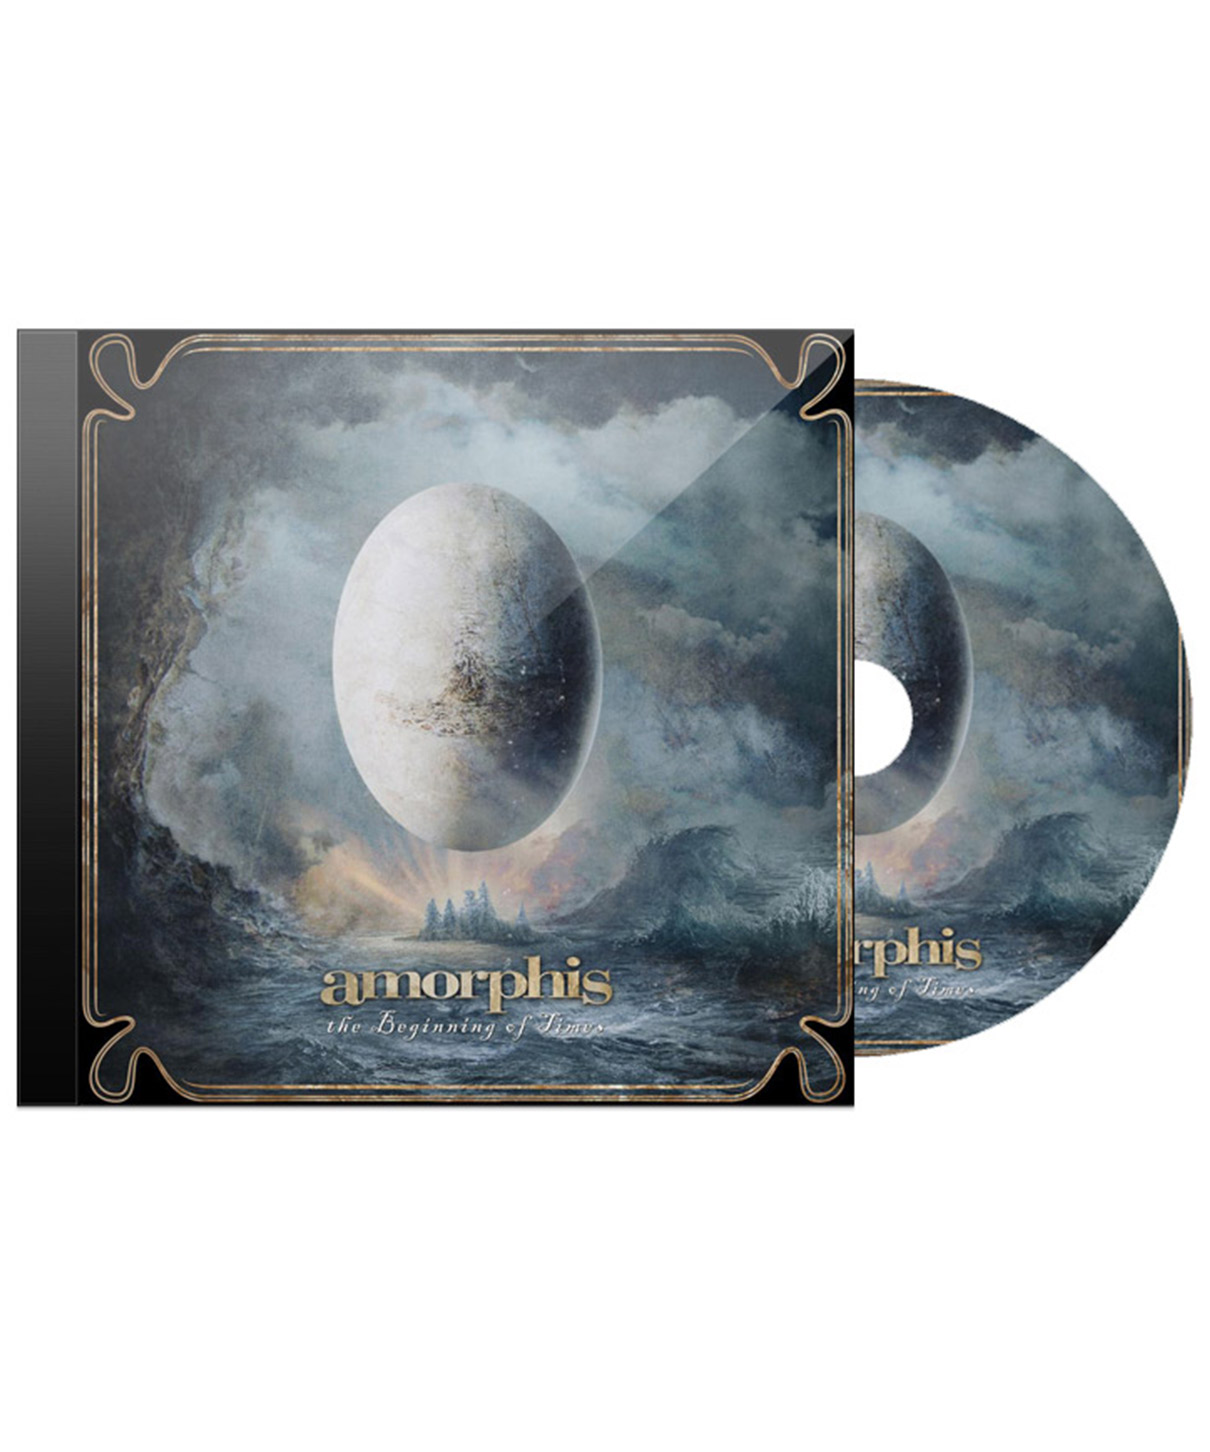 CD Диск Amorphis The Beginnig Of Times - фото 1 - rockbunker.ru